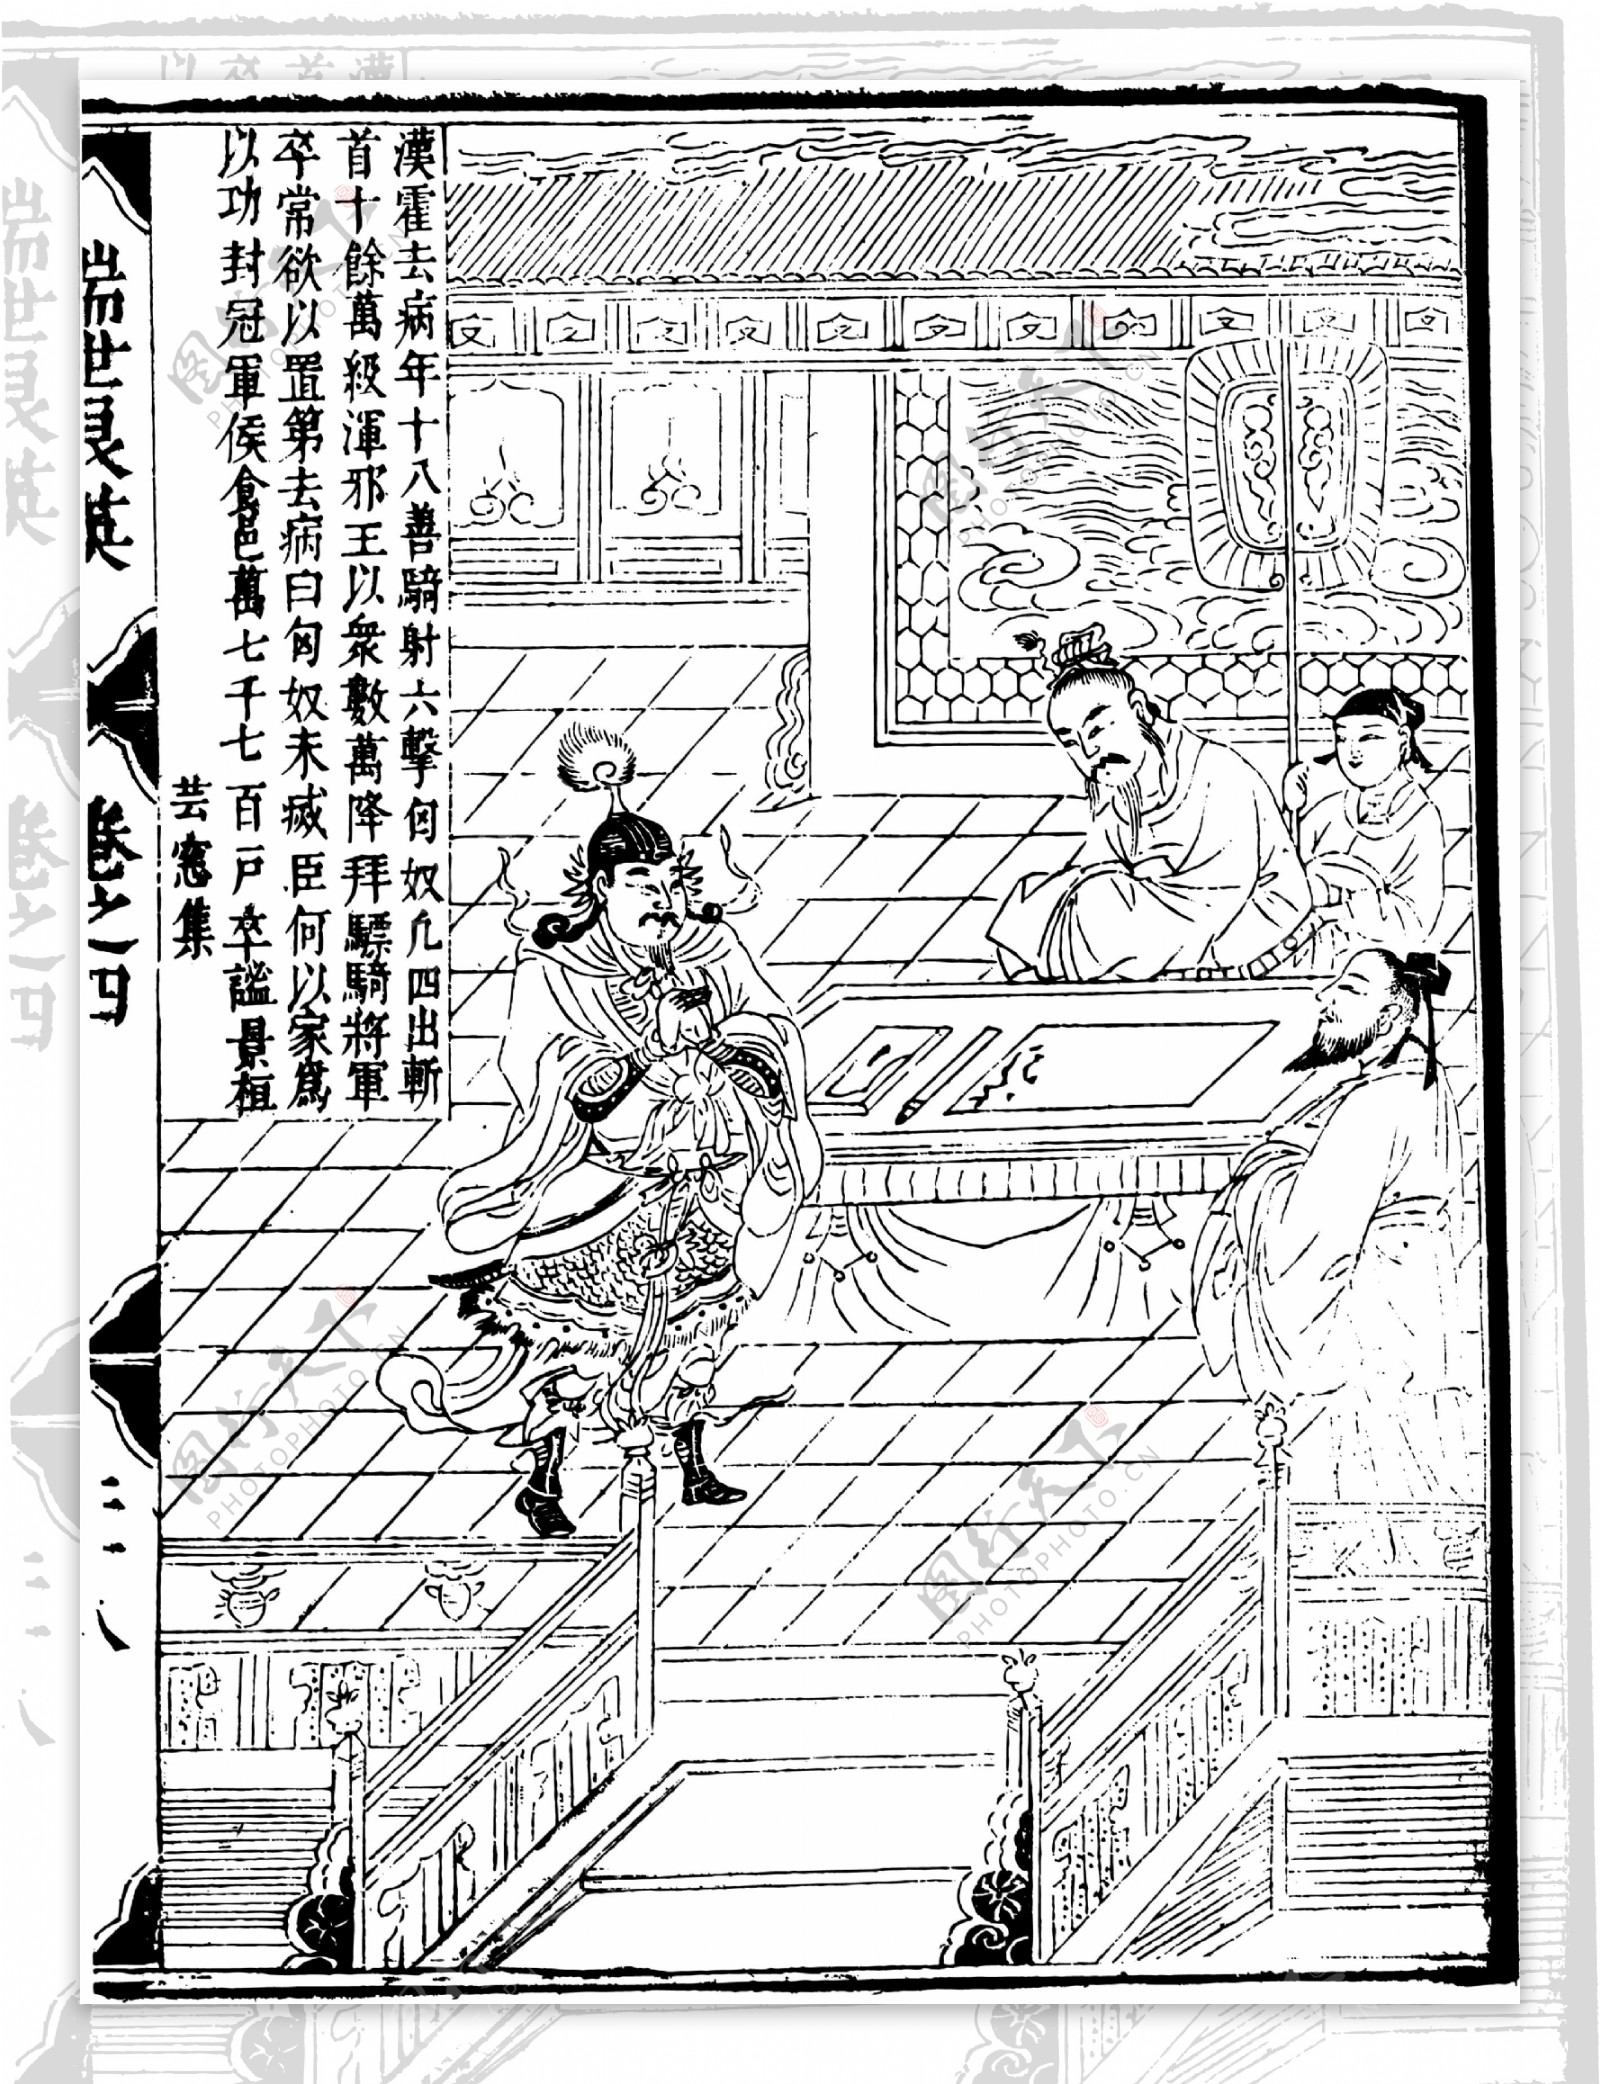 瑞世良英木刻版画中国传统文化06